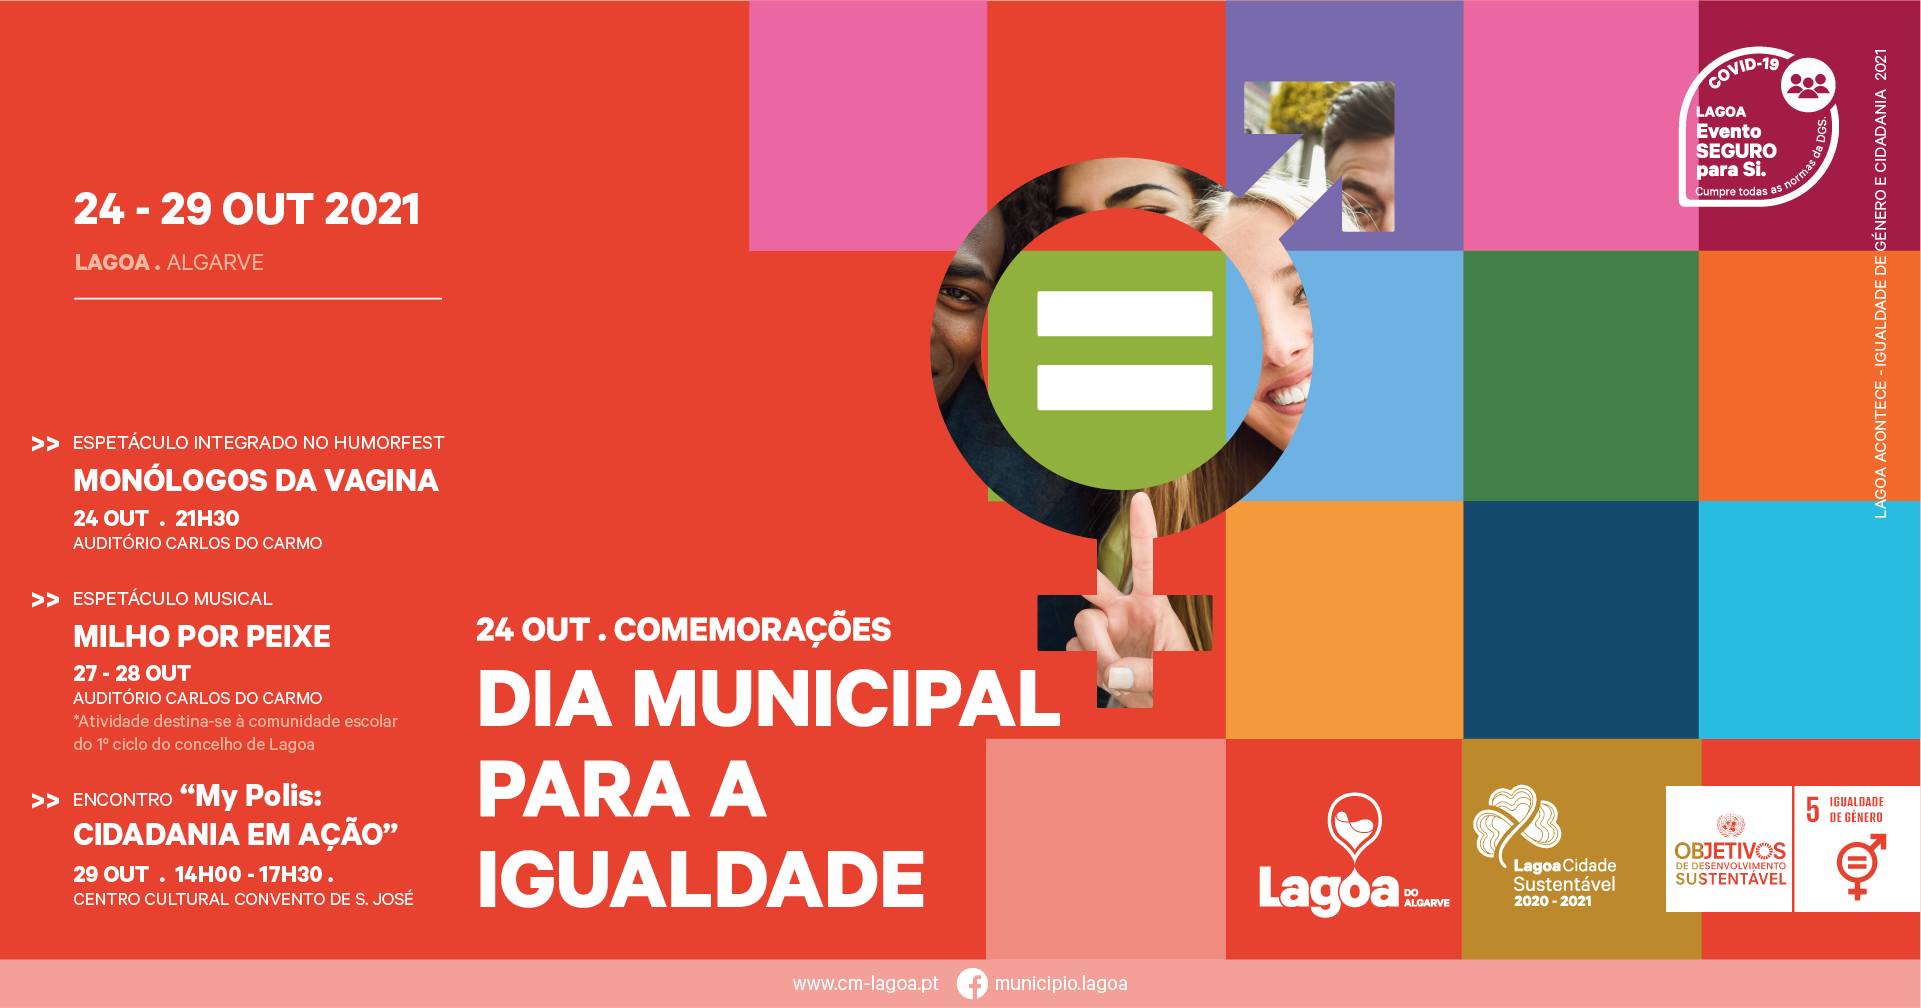 Comemorações do Dia Municipal para a Igualdade